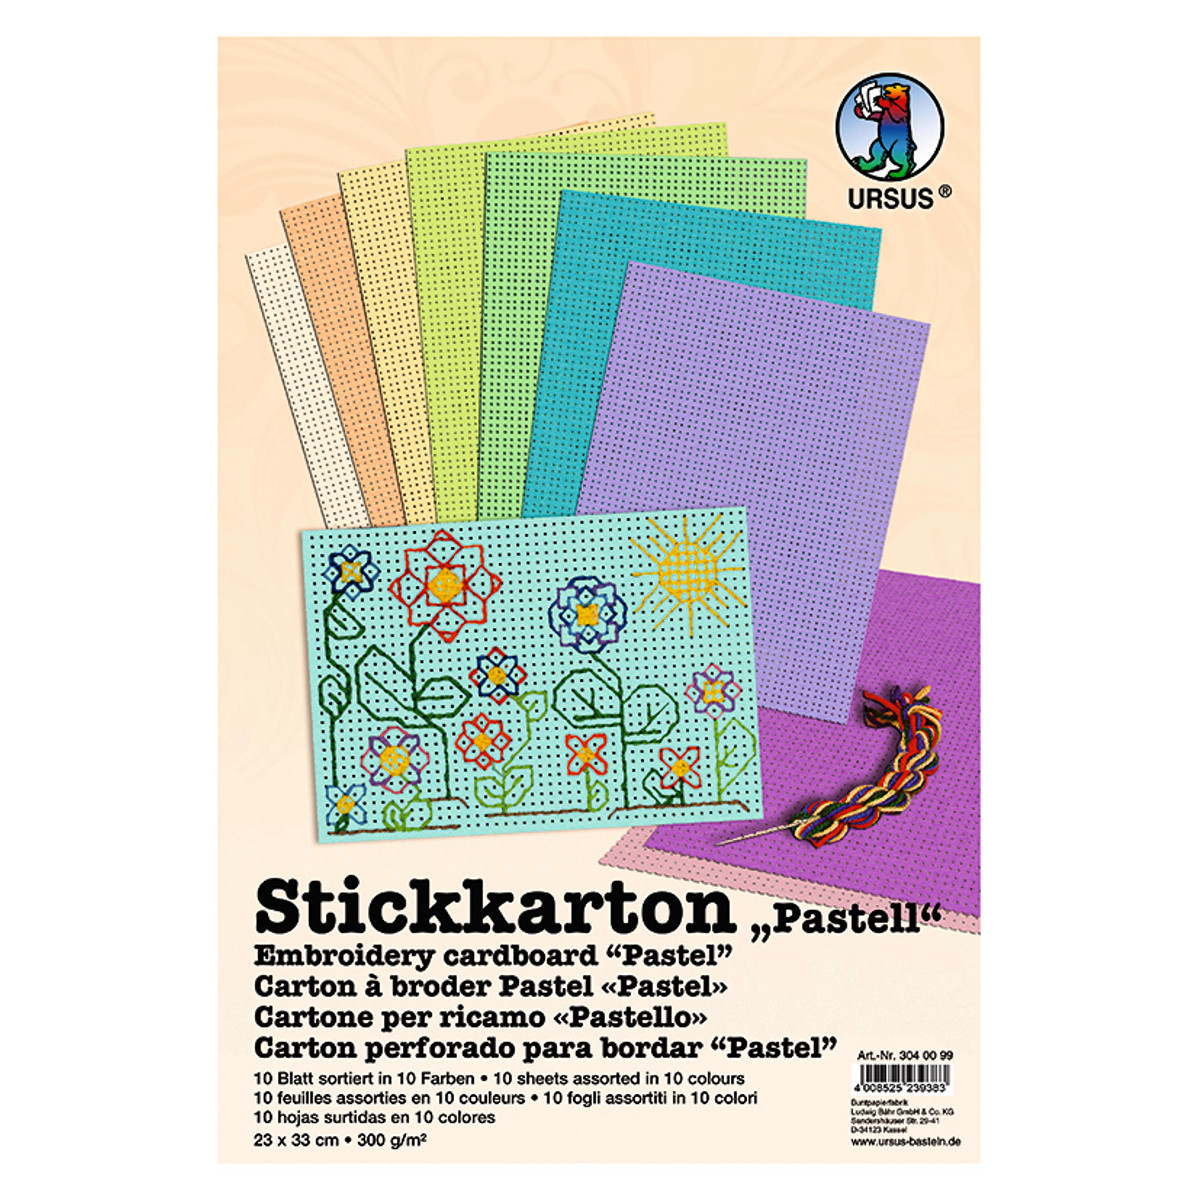 Stickkarton "Pastell" 300 g/qm 23 x 33 cm - 10 Blatt sortiert